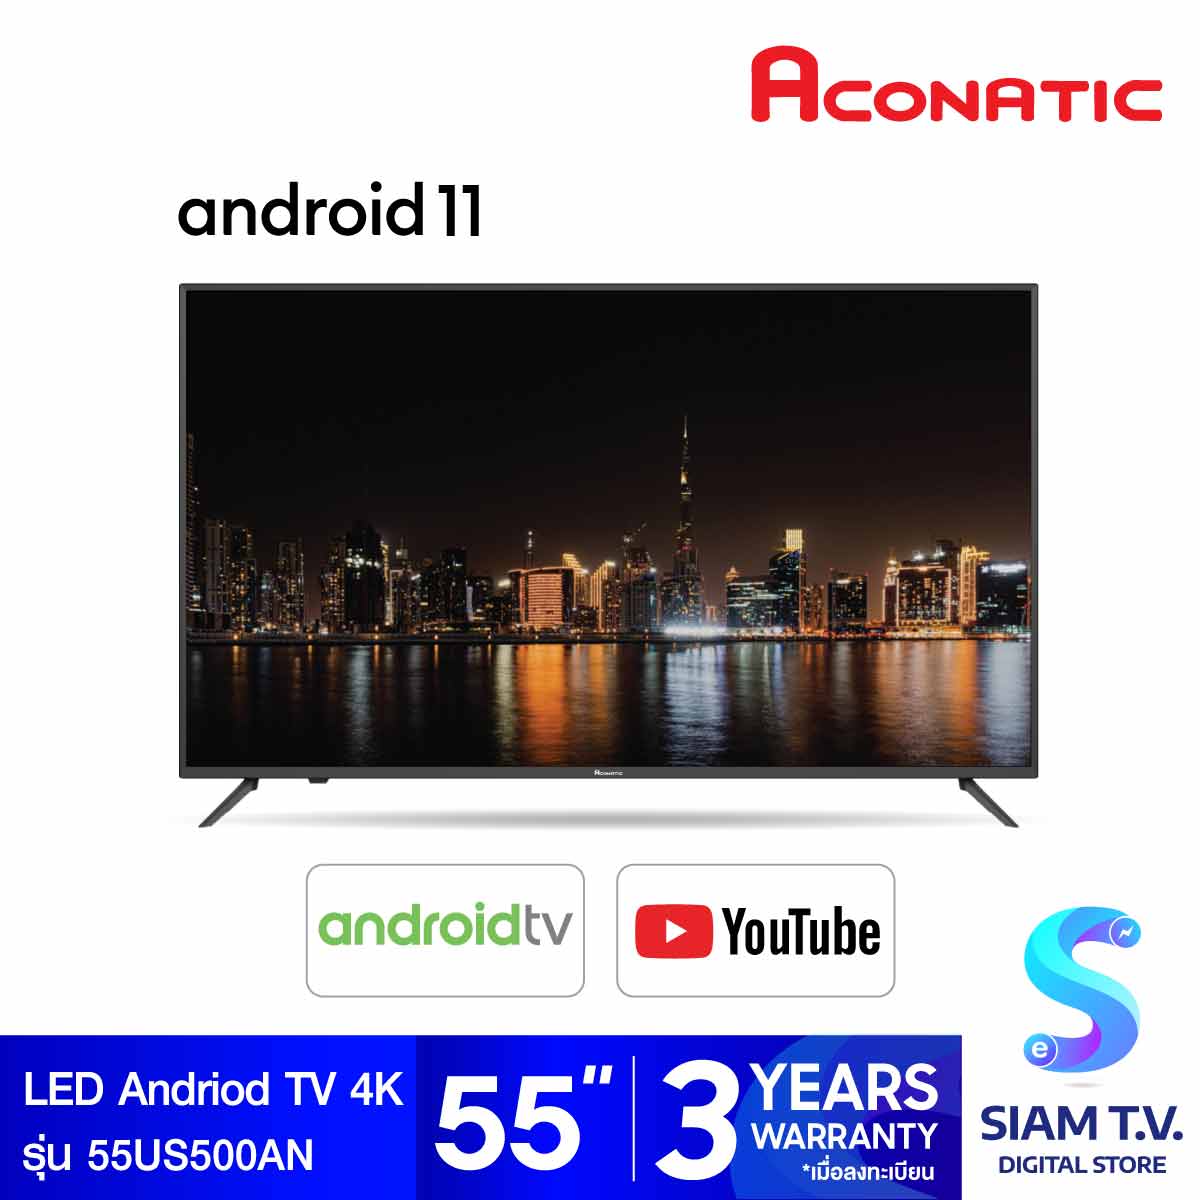 โปรโมชั่น Flash Sale : ACONATIC LED Andriod TV 4K รุ่น 55US500AN แอนดรอย์ทีวี 55 นิ้ว Android 11 โดย สยามทีวี by Siam T.V.